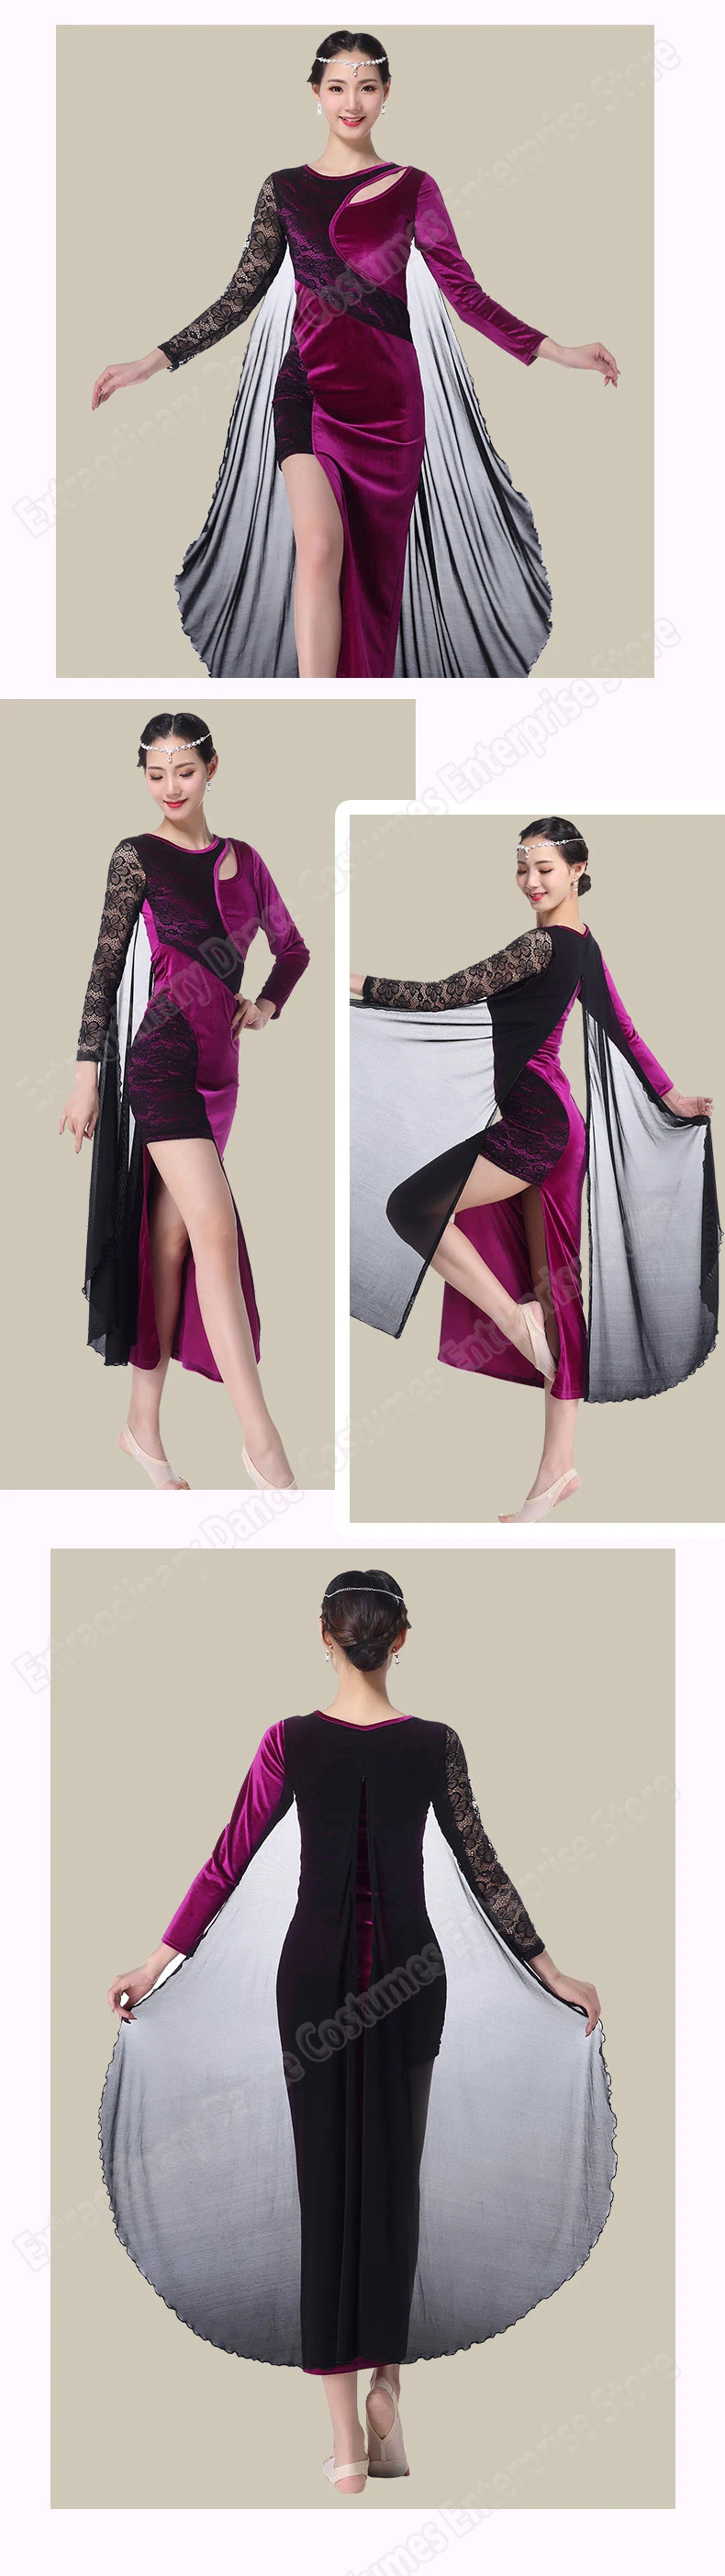 Живота Танцы Для женщин Практика одежда модная одежда с длинными рукавами бархатные юбки сцены костюм живота платье для танцев Oriental